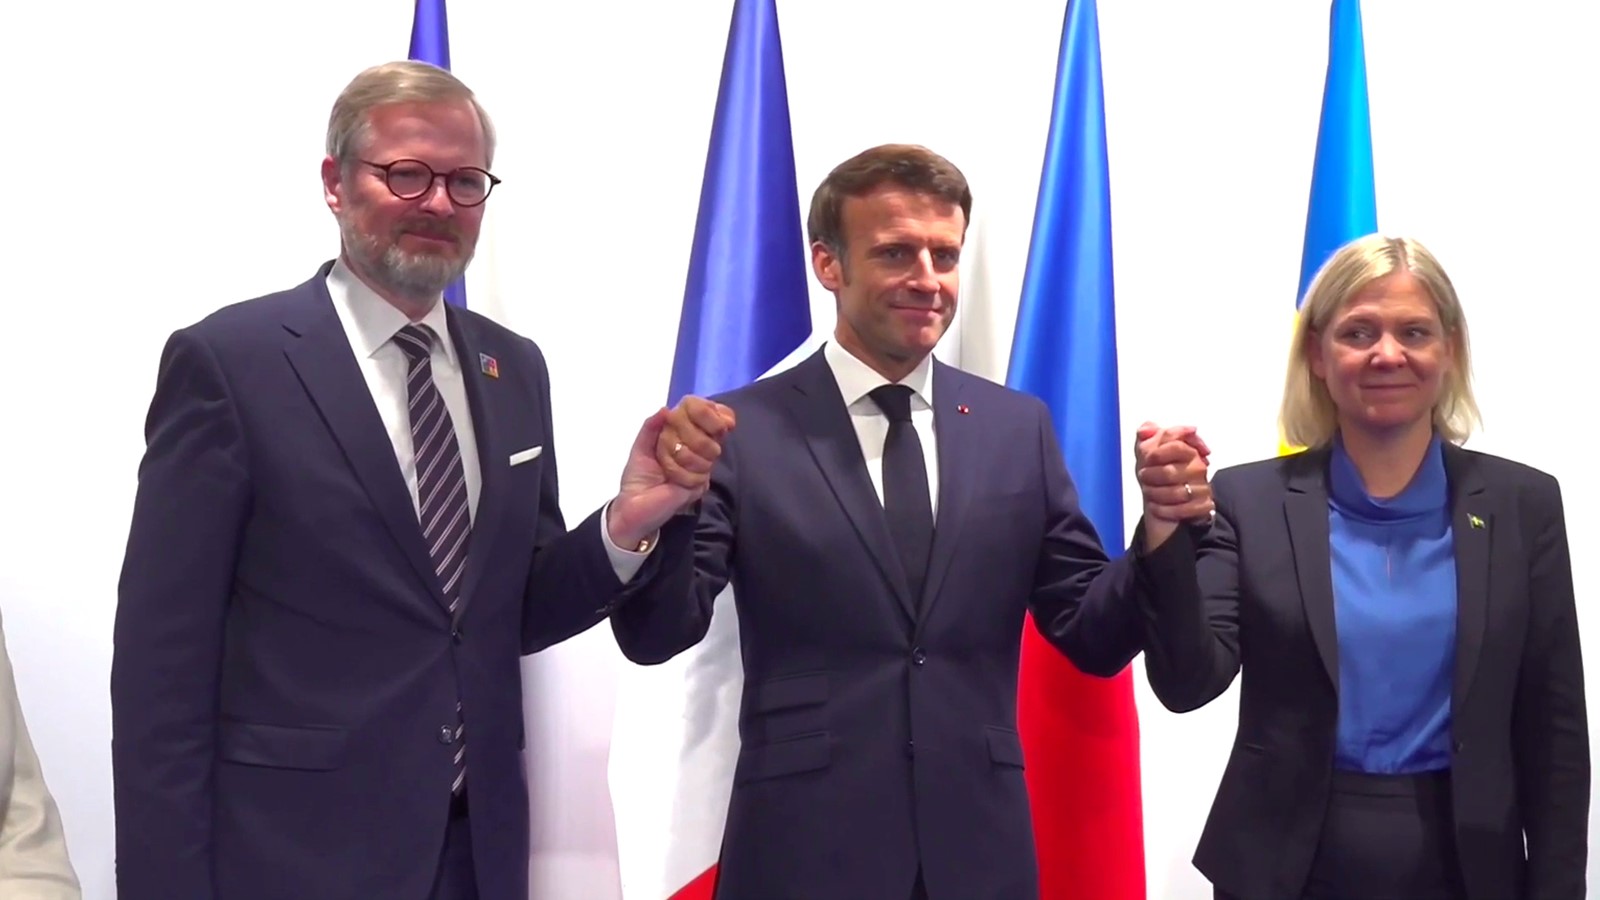 Le Président Emmanuel Macron avec le Premier ministre de la République tchèque et la Première ministre de la Suède. Crédit: Présidence de la République